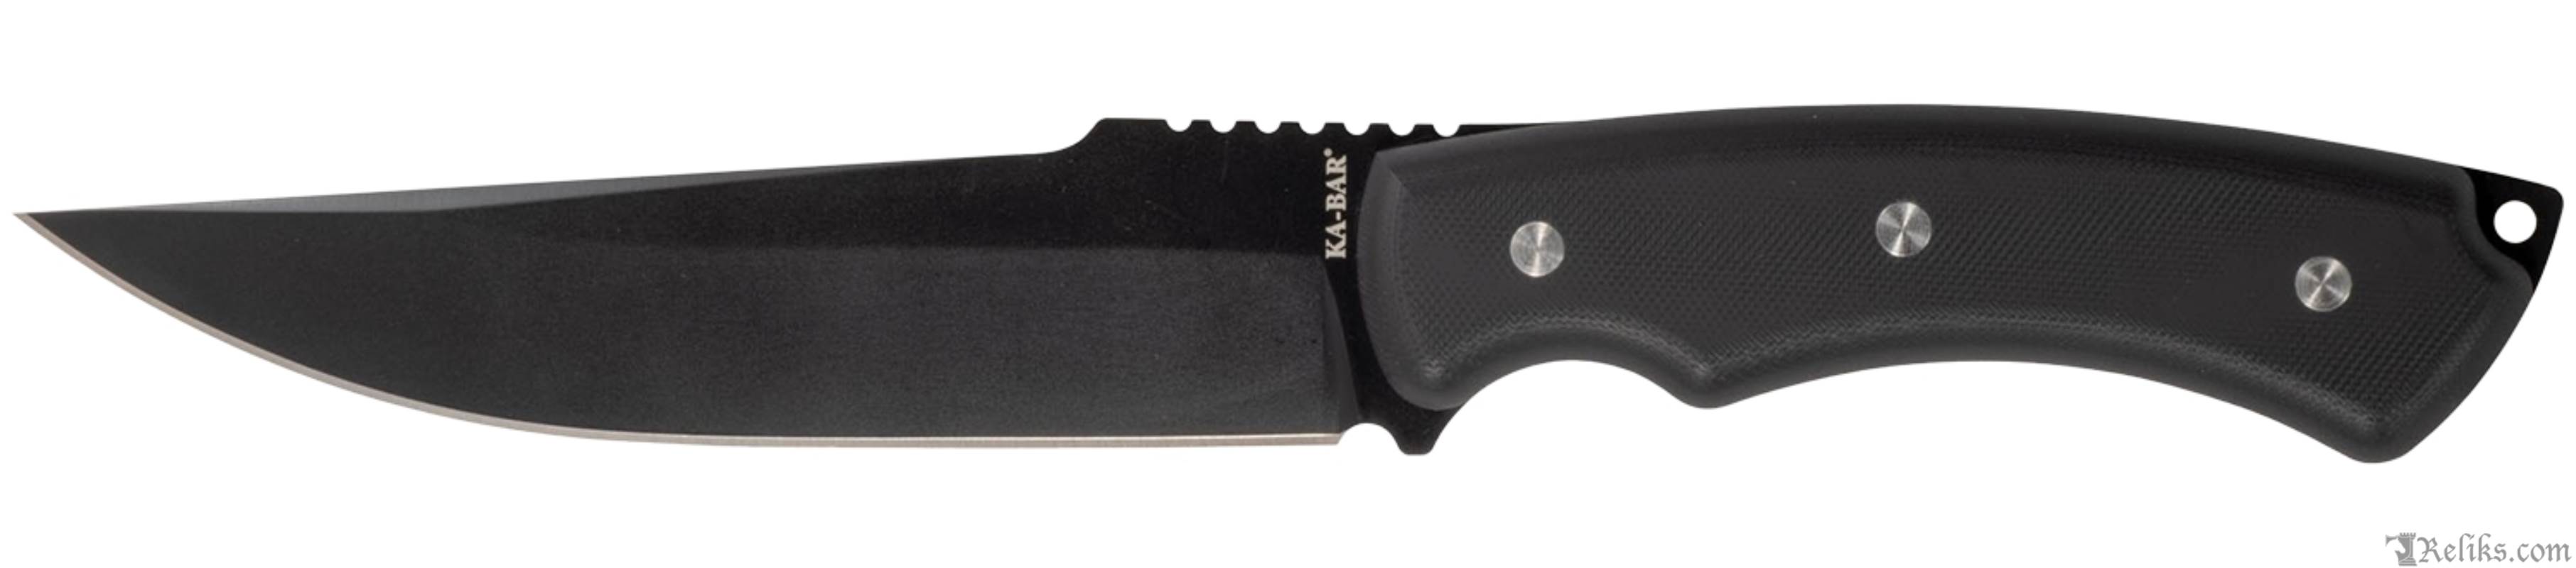 kabar trail point knife